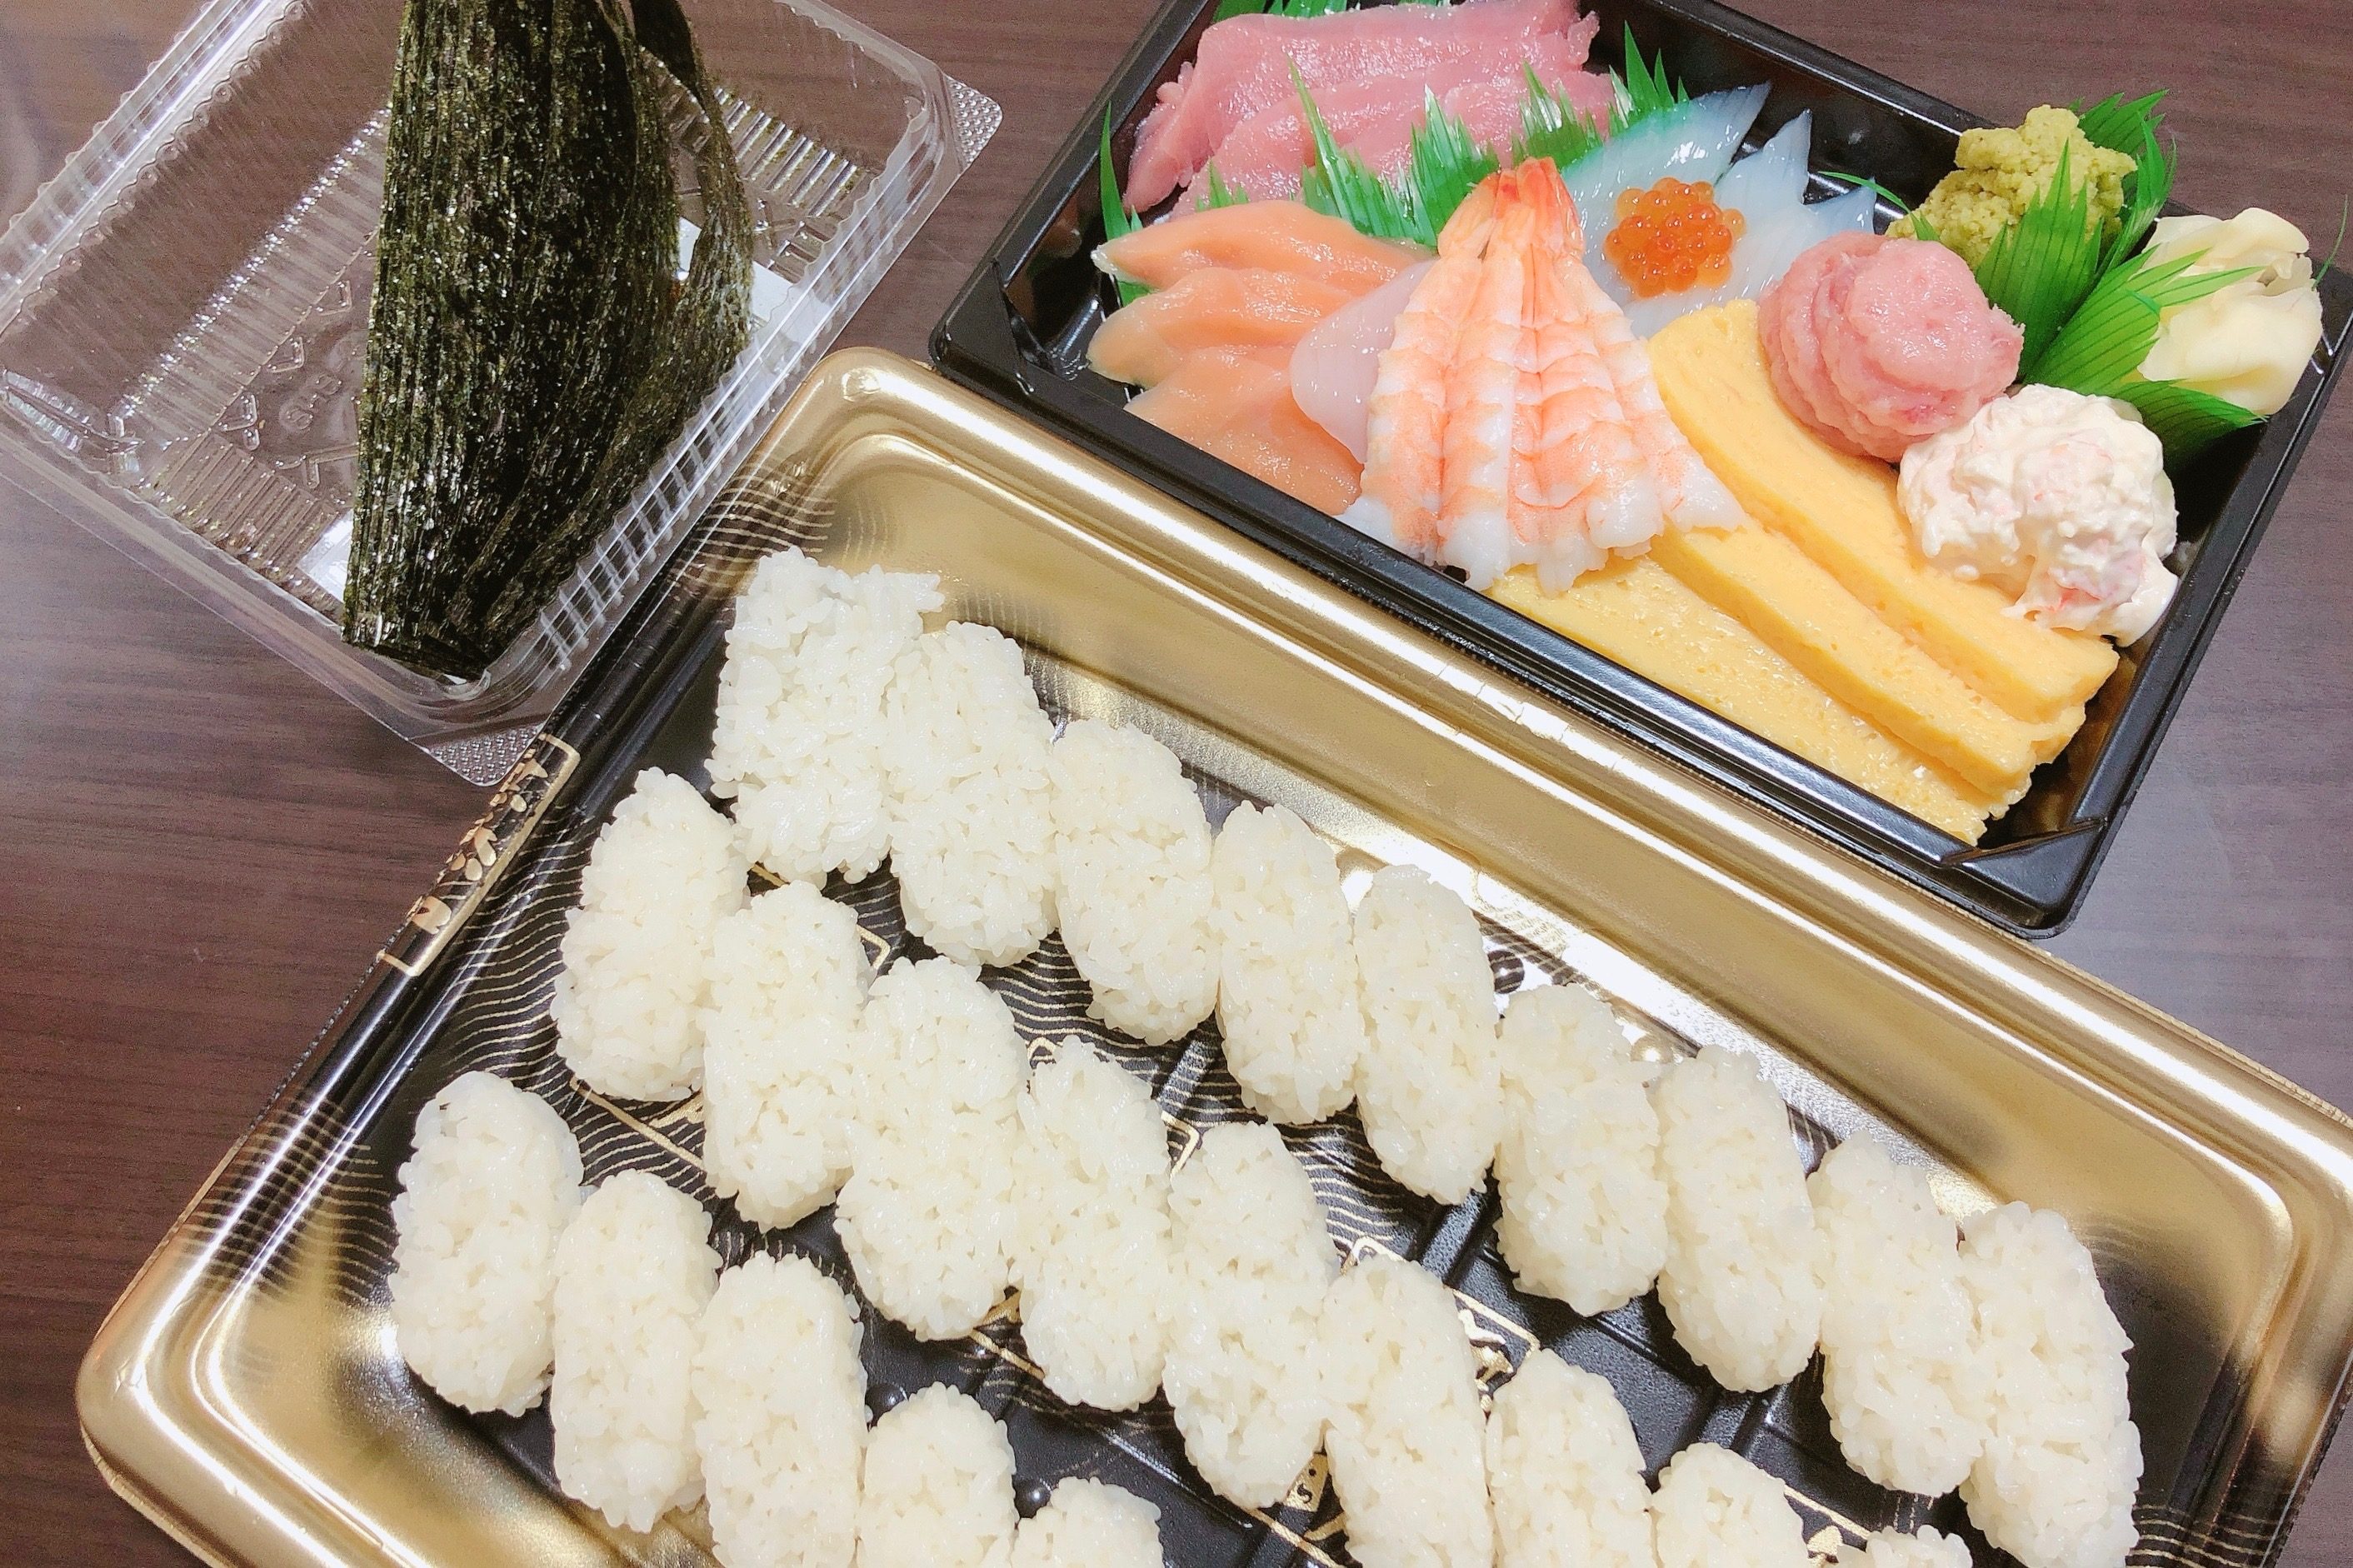 メニュー くら 寿司 テイクアウト くら寿司から“打倒コロナメニュー”が新登場⁉「日本を元気に！」キャンペーン第1弾 1月15日(金)から開始